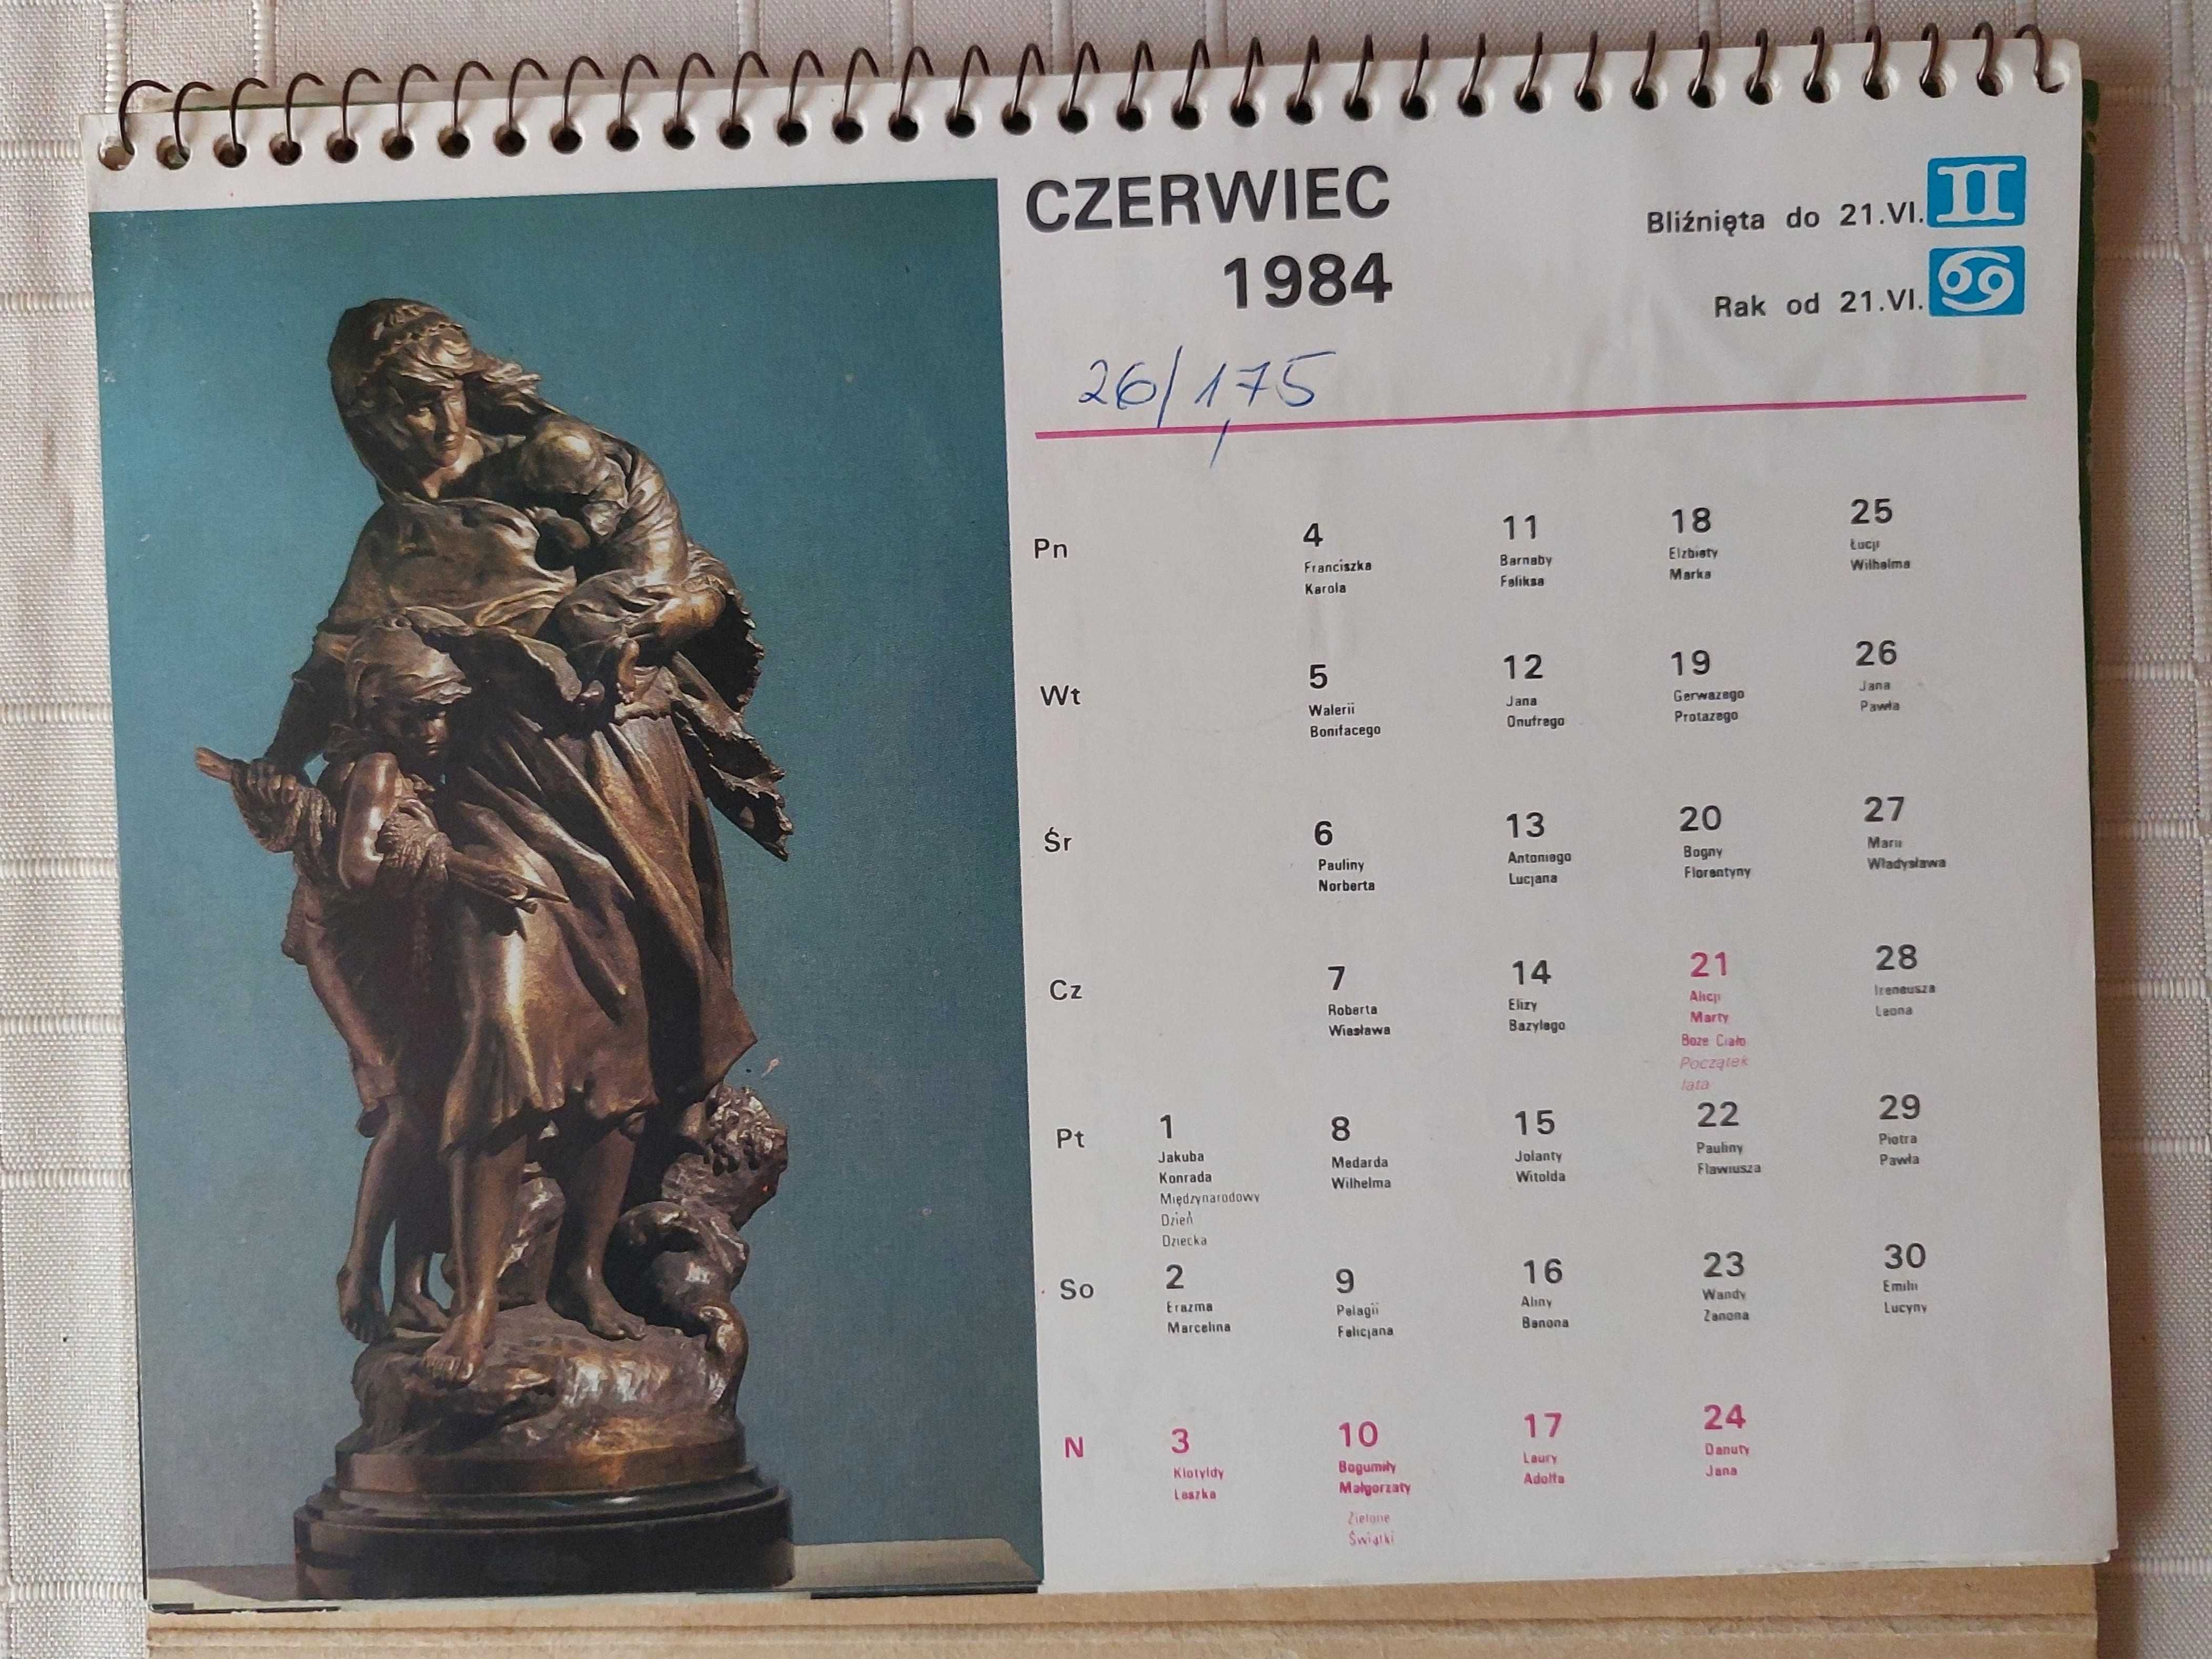 Kalendarz - Muzeum Narodowe we Wrocławiu. Zbiory, rzeźby (1984)